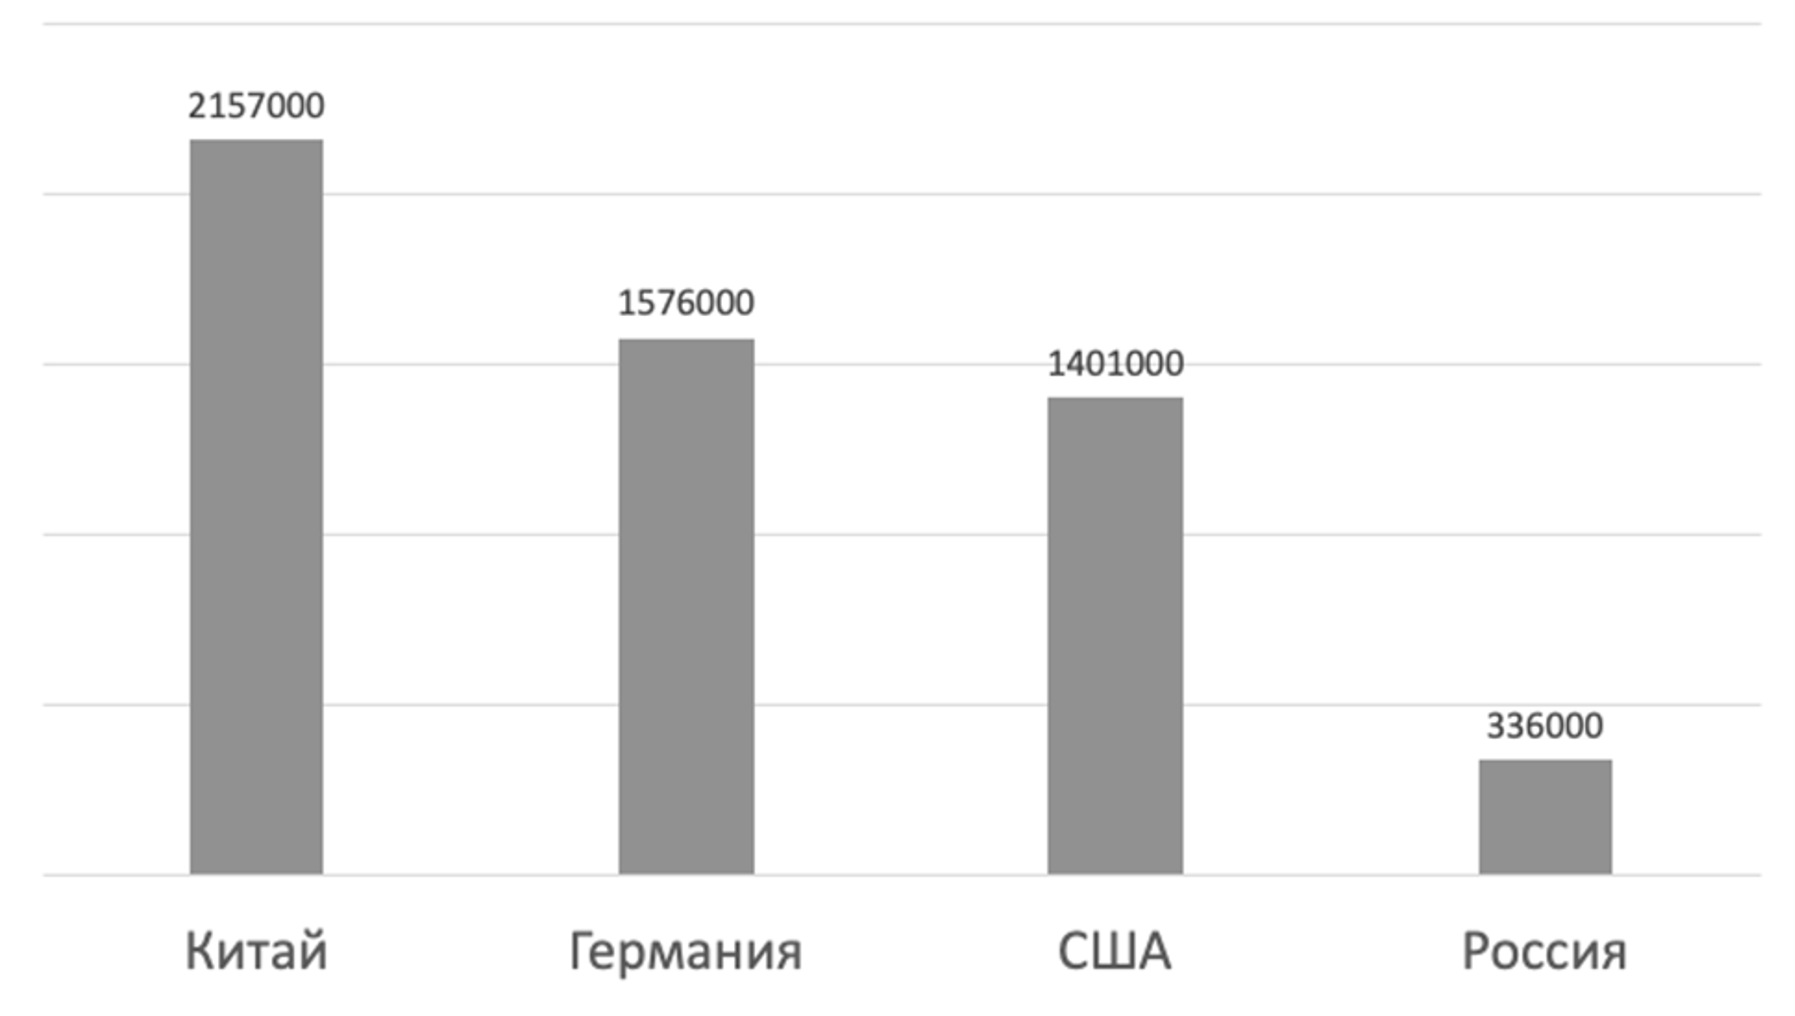 Рис. 2 Сравнение объемов экспорта  Китая, Германии, США и России (2020 г.) (млн дол)